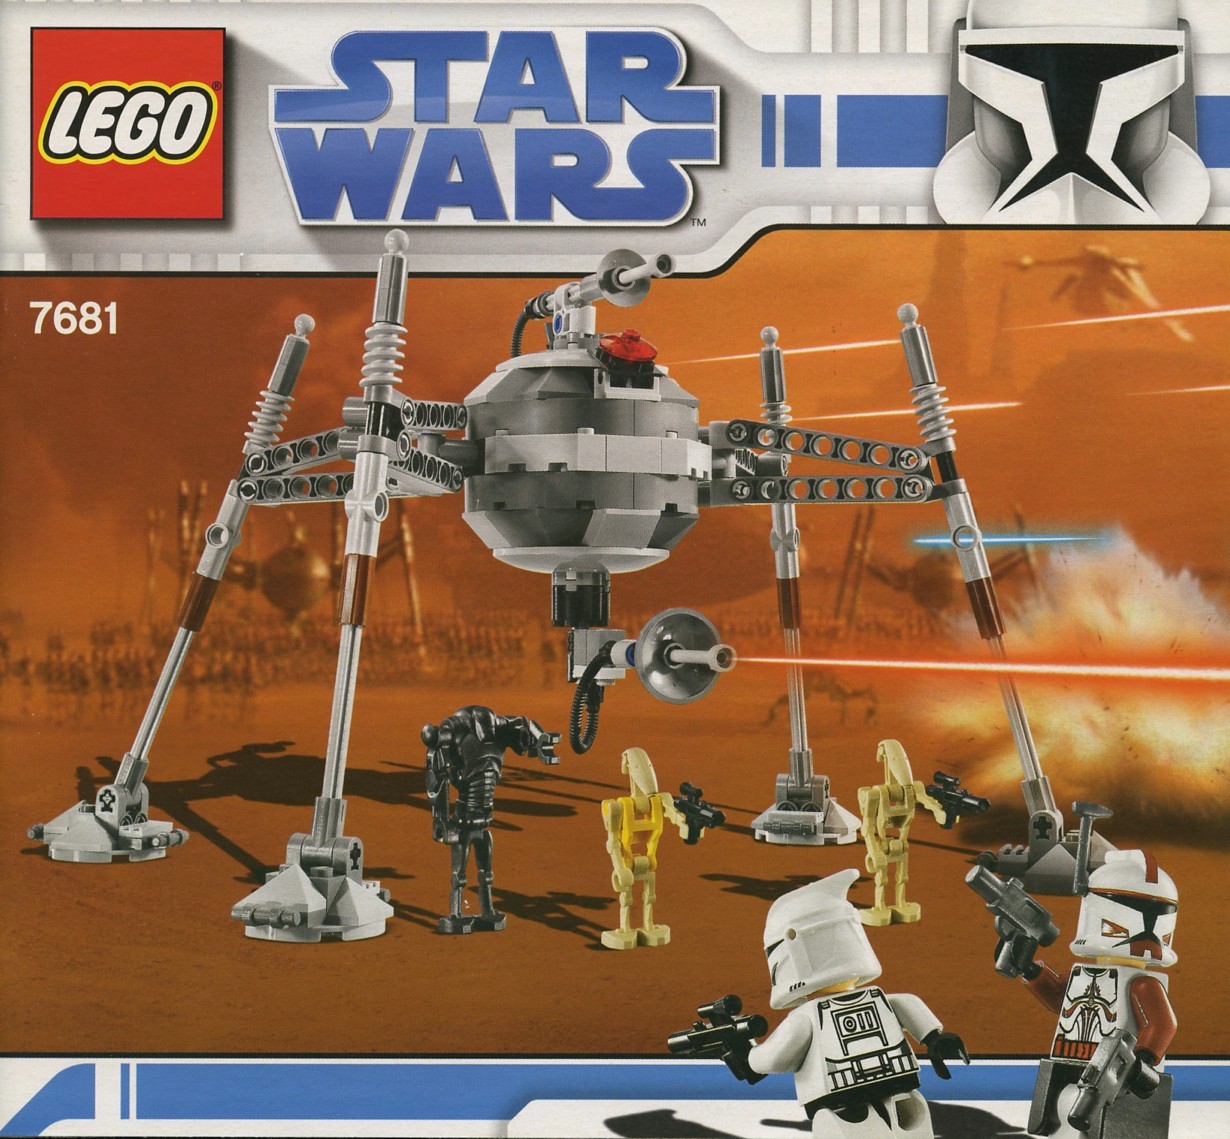 systematisk nægte bygning LEGO minifigures In set 7681-1 Commander Fox | Brickset